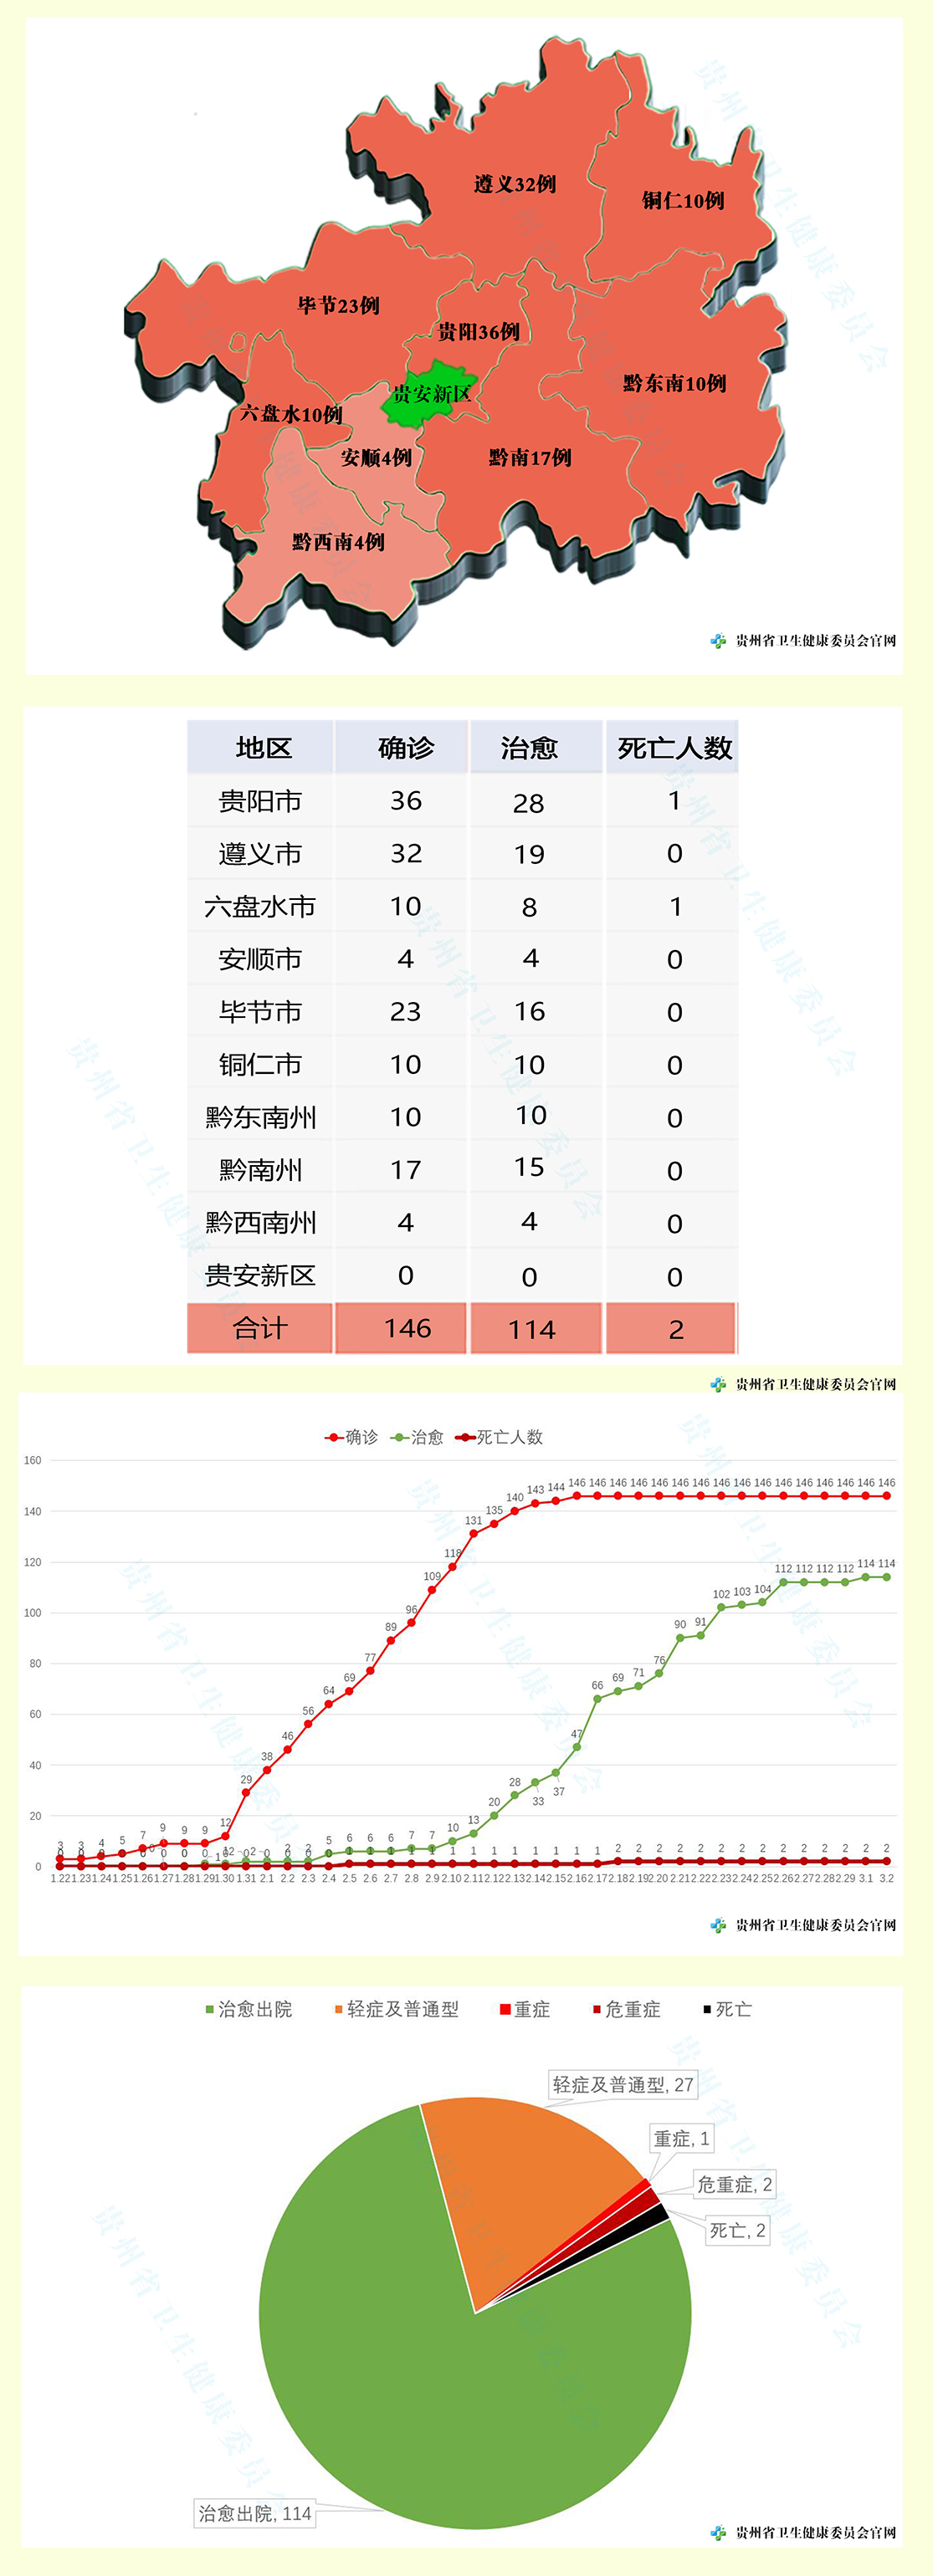 贵州无新增新冠肺炎确诊病例 累计确诊146例死亡2例